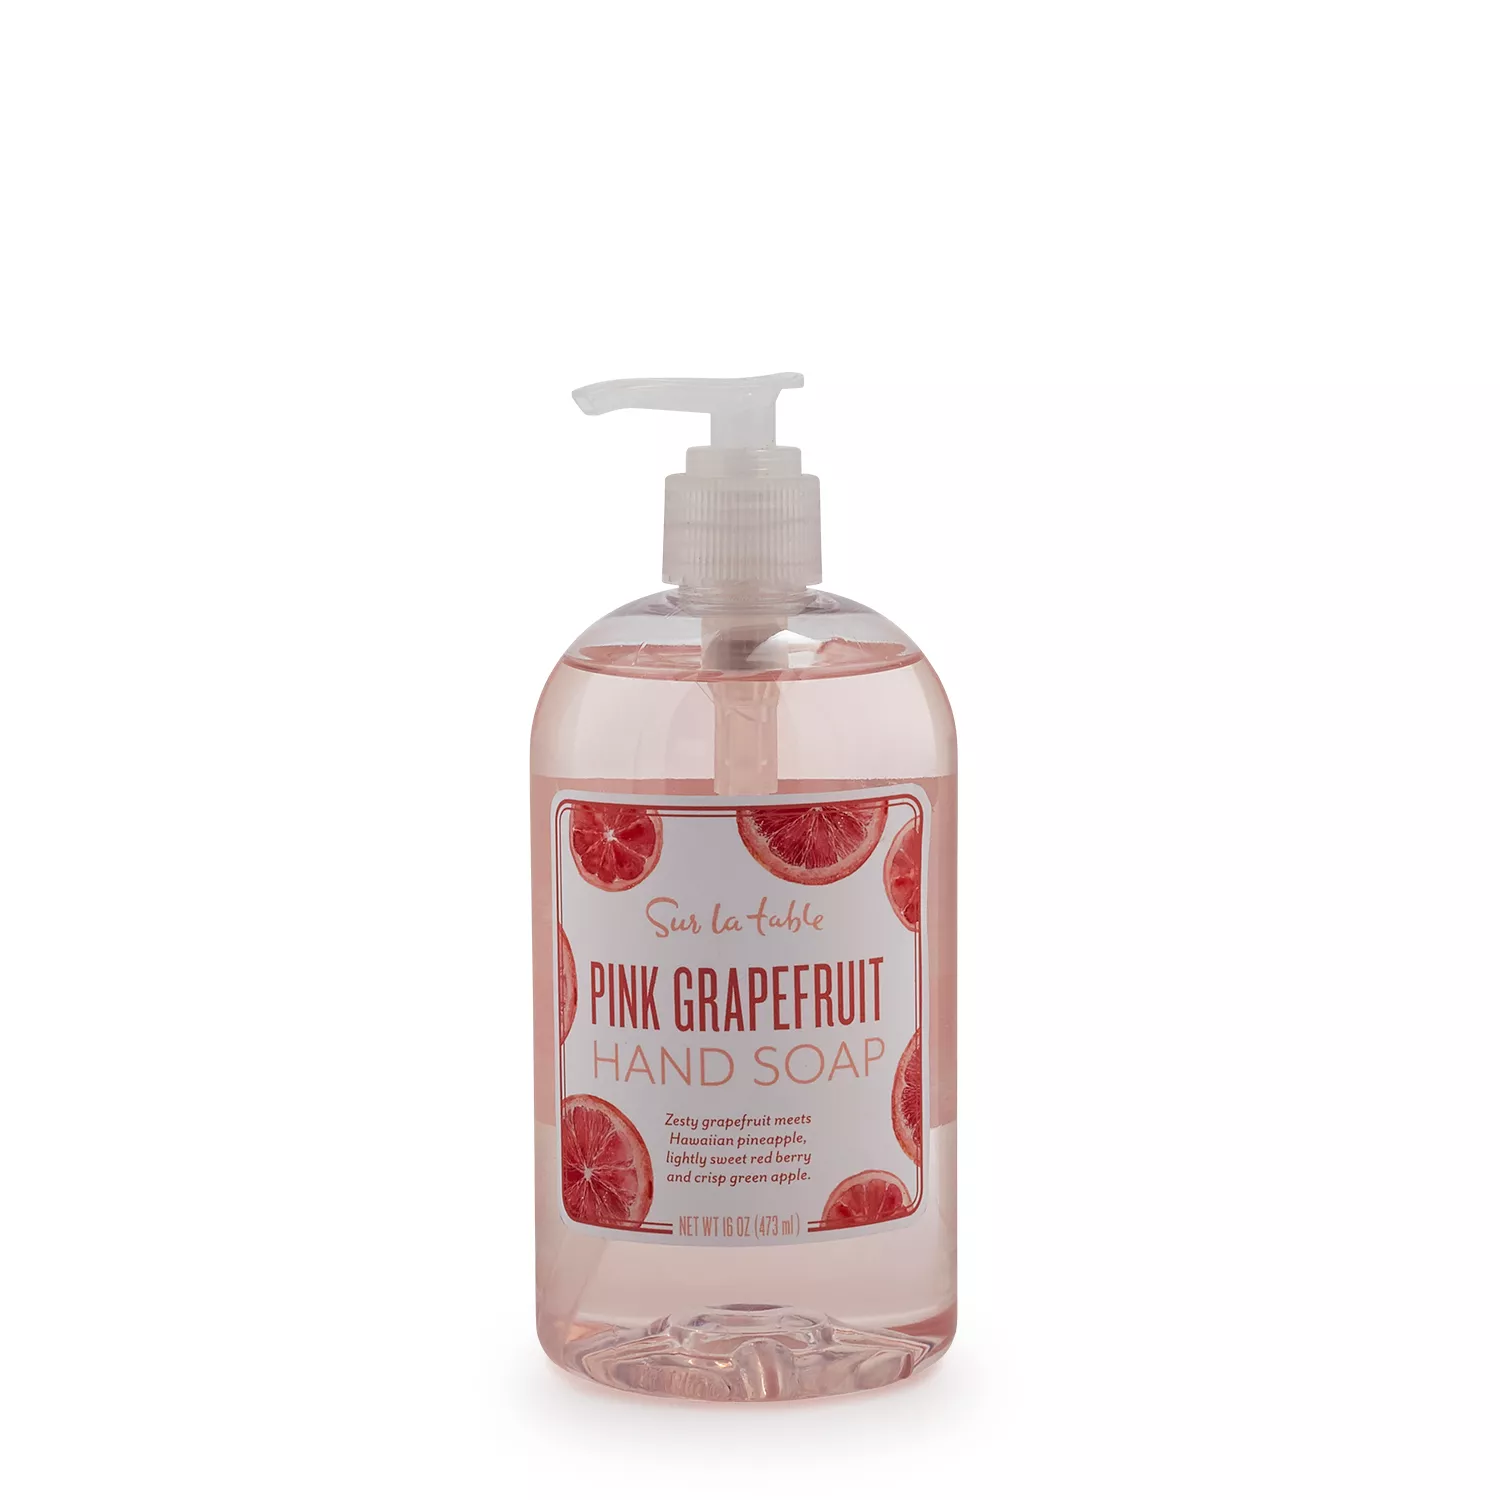 Sur La Table Pink Grapefruit Hand Soap, 16 oz.